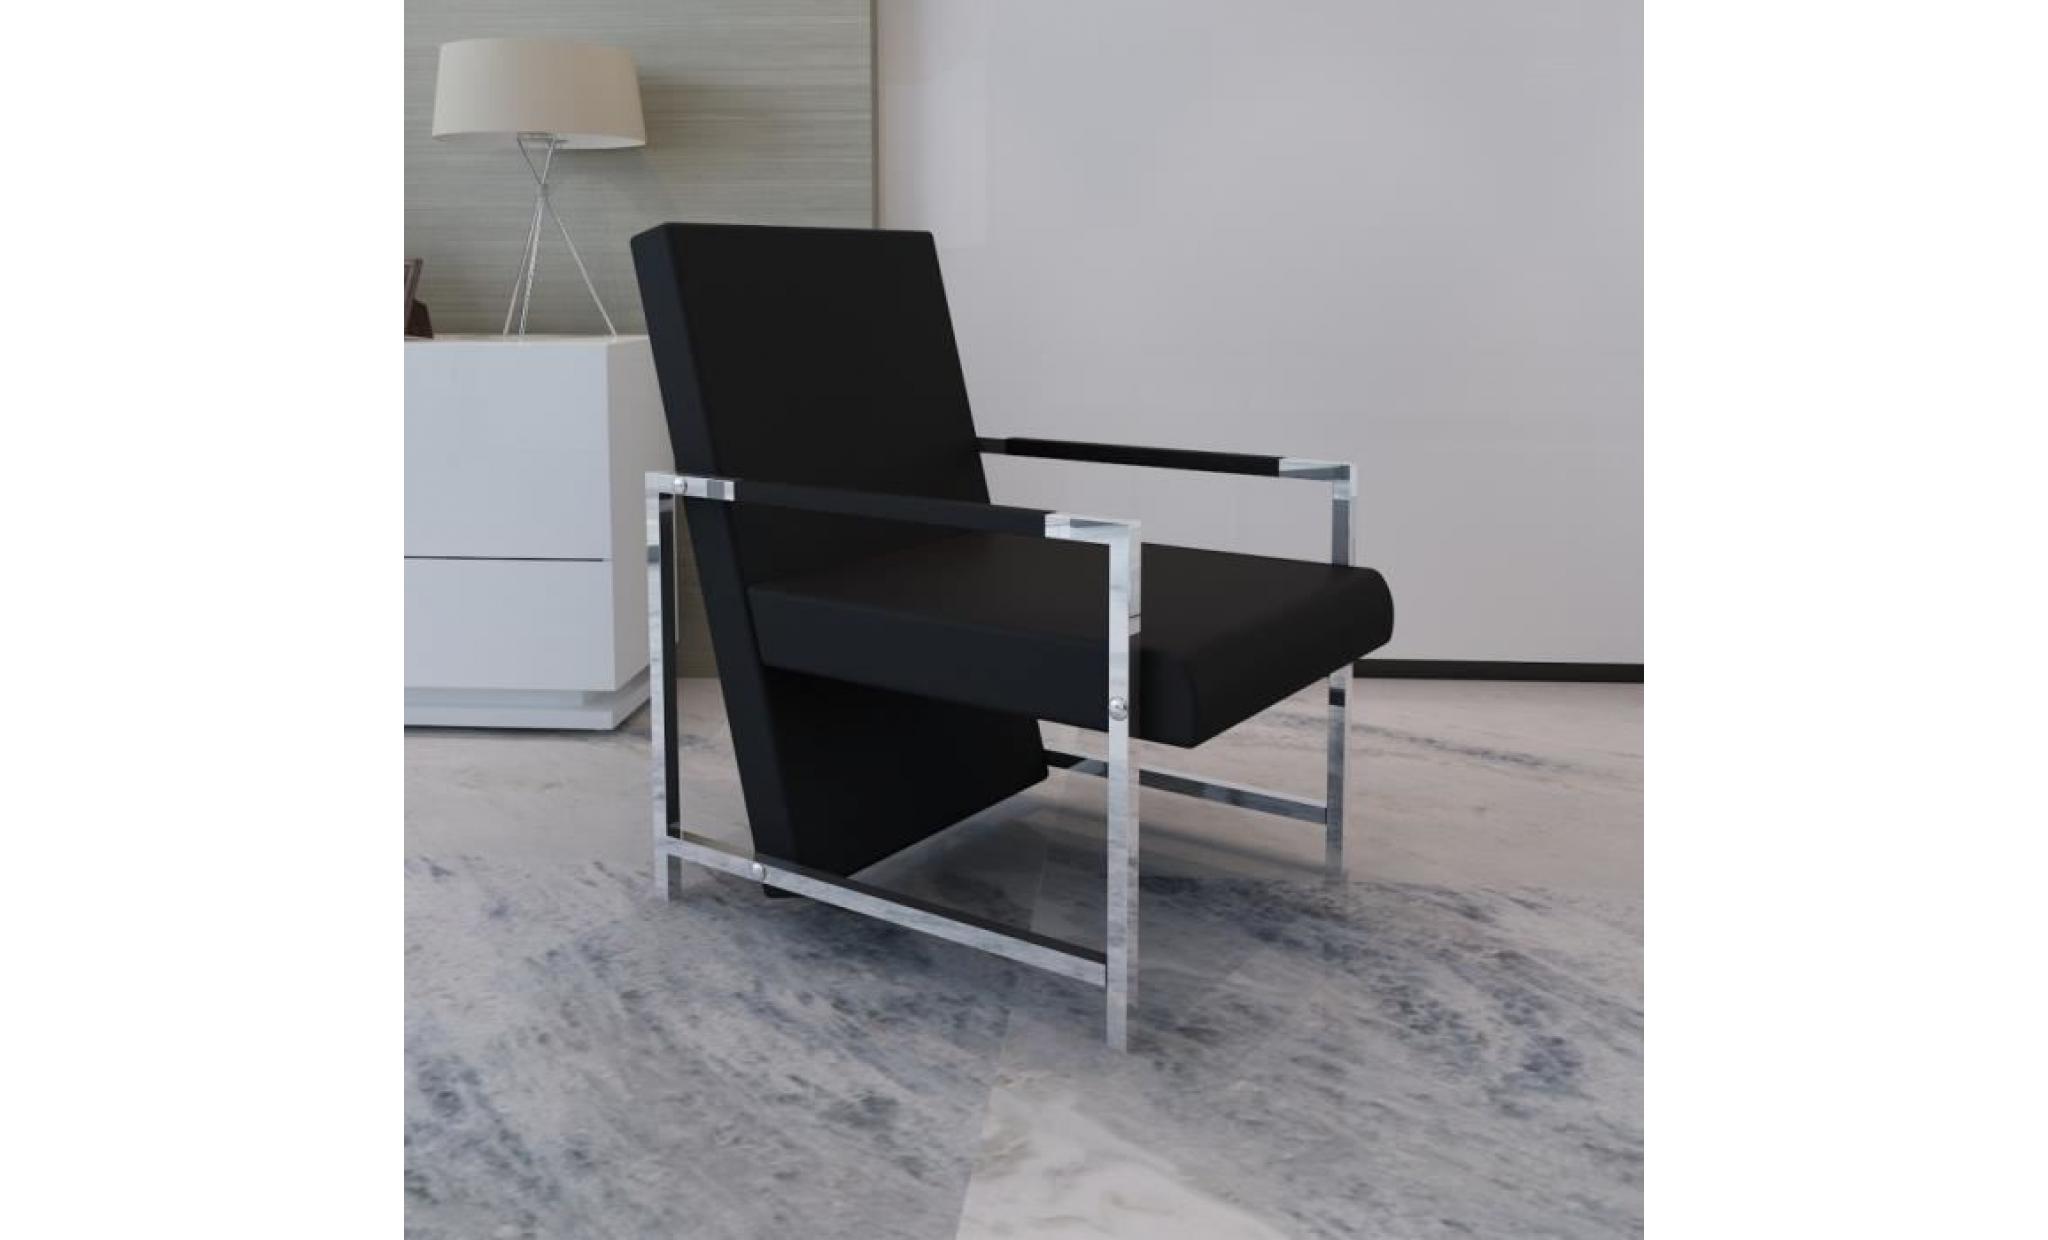 ce fauteuil magnifique, avec un design moderne et original, ne passera pas inaperçu dans votre pièce. construit avec une ossature... pas cher